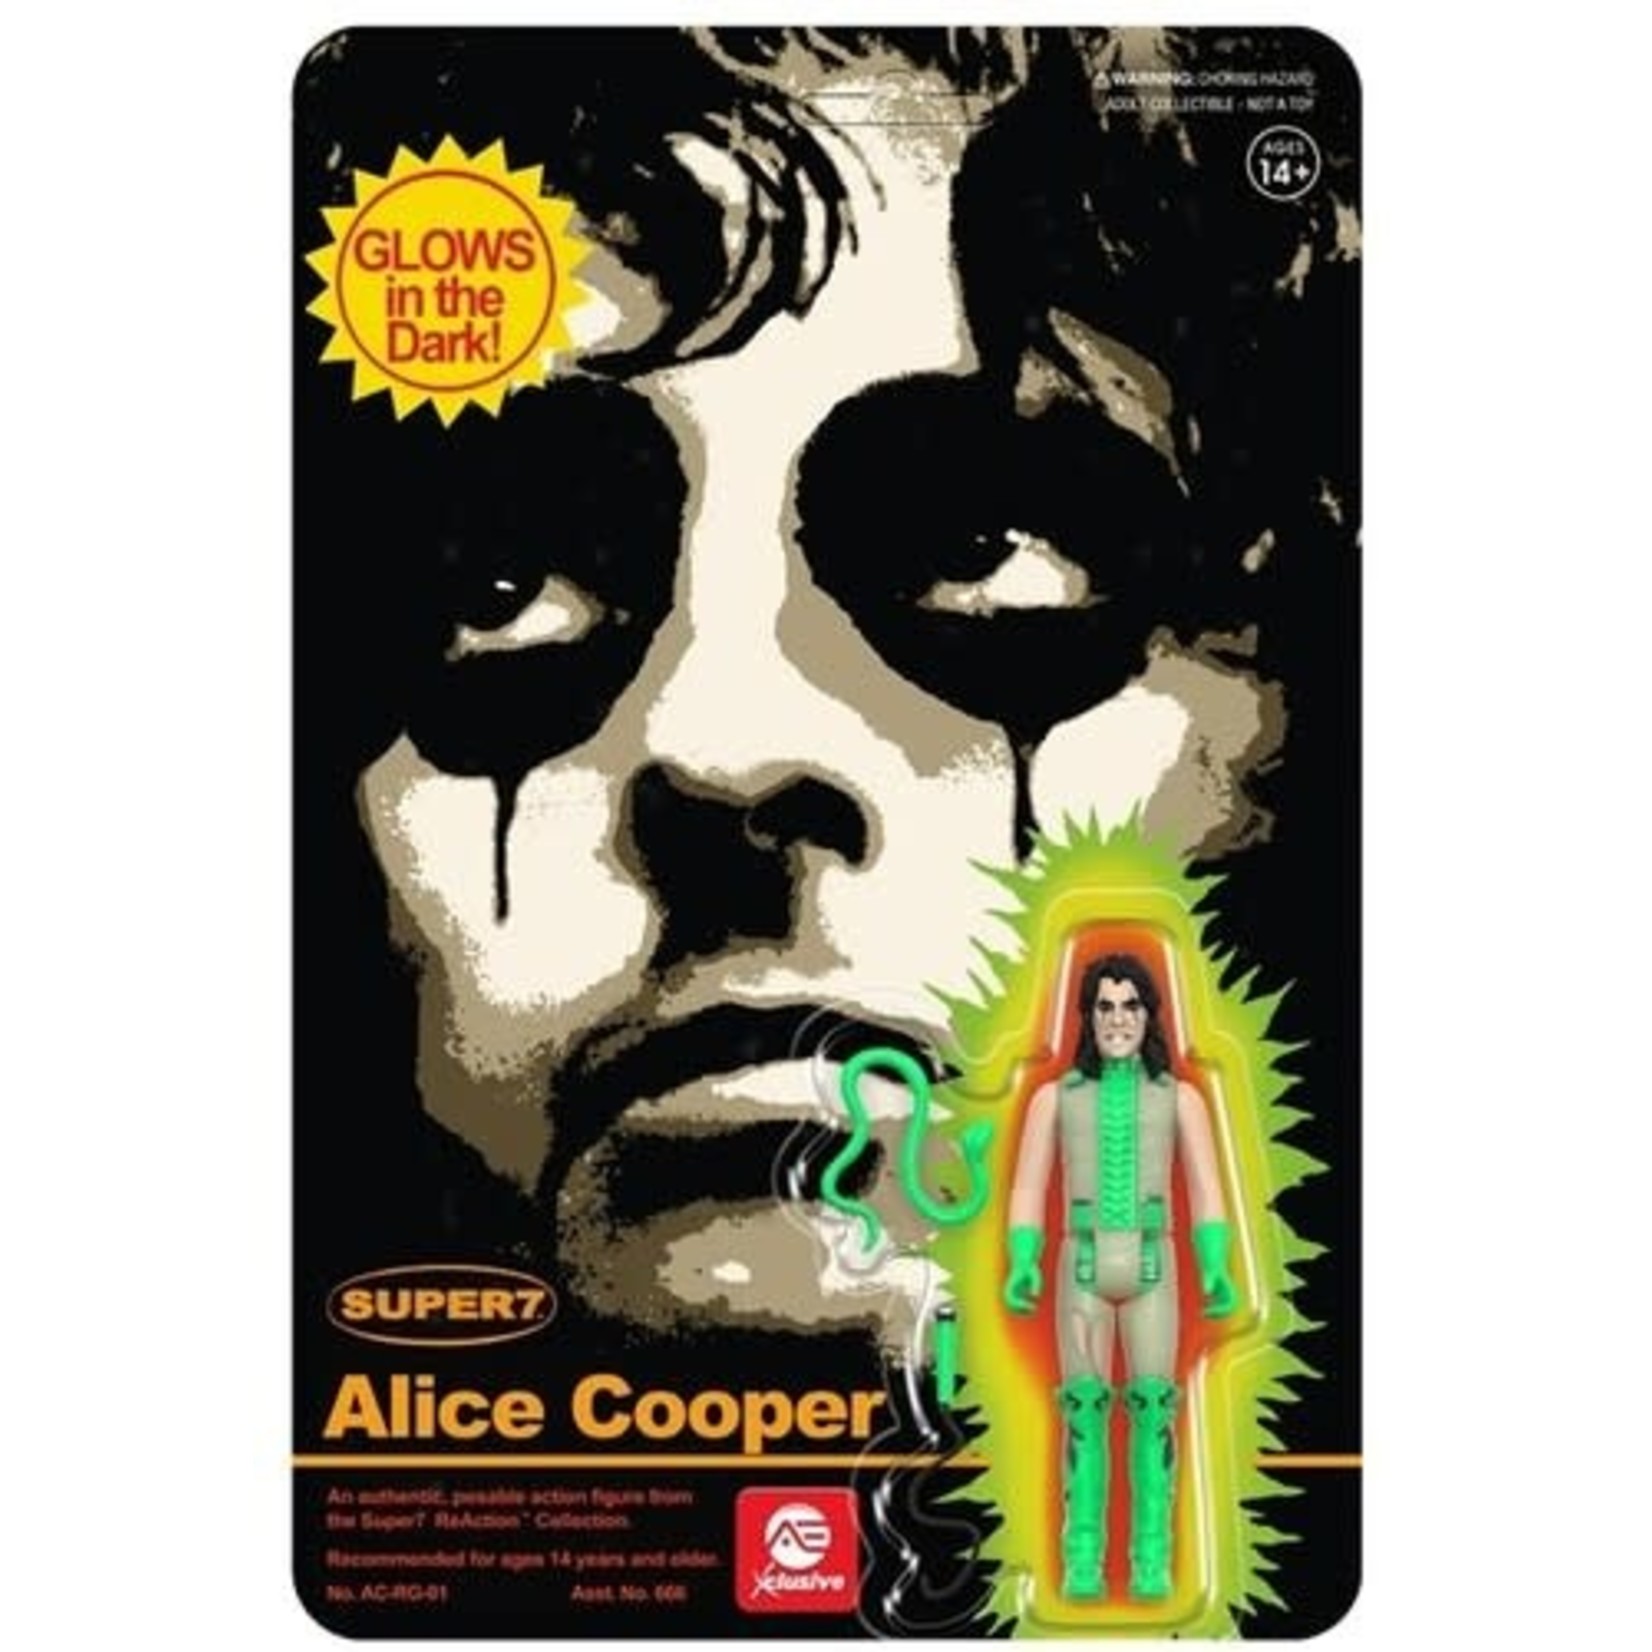 Super7 Alice Cooper (ReAction Figure) [Glow]